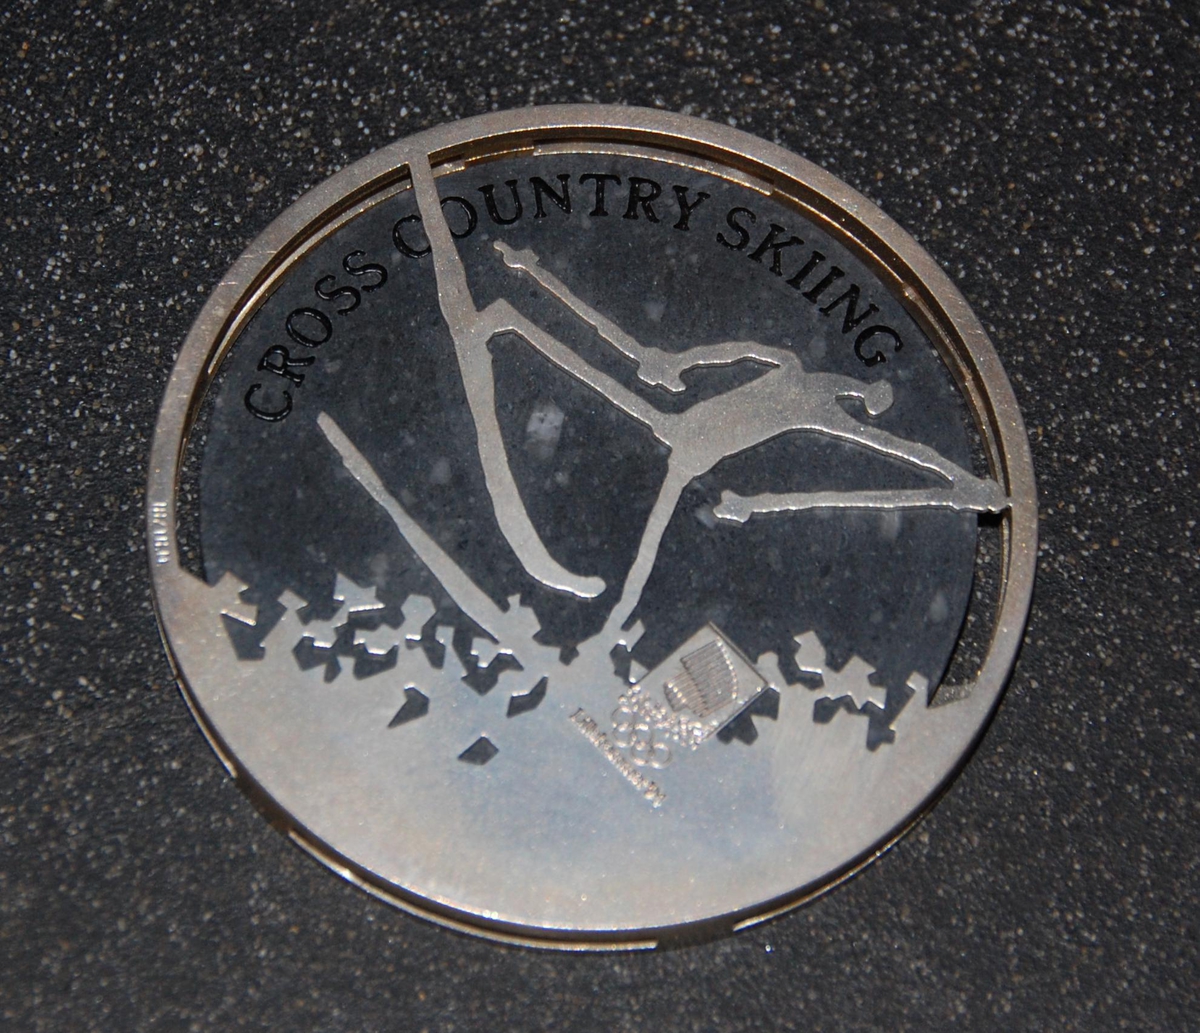 Medalje av metall og stein. På den ene siden er det motiv av de olympiske ringene over krystallmønster. På den andre siden er det piktogram av en skiløper og emblemet for de olympiske vinterleker på Lillehammer i 1994. Medaljen er plassert på et stativ av granitt.